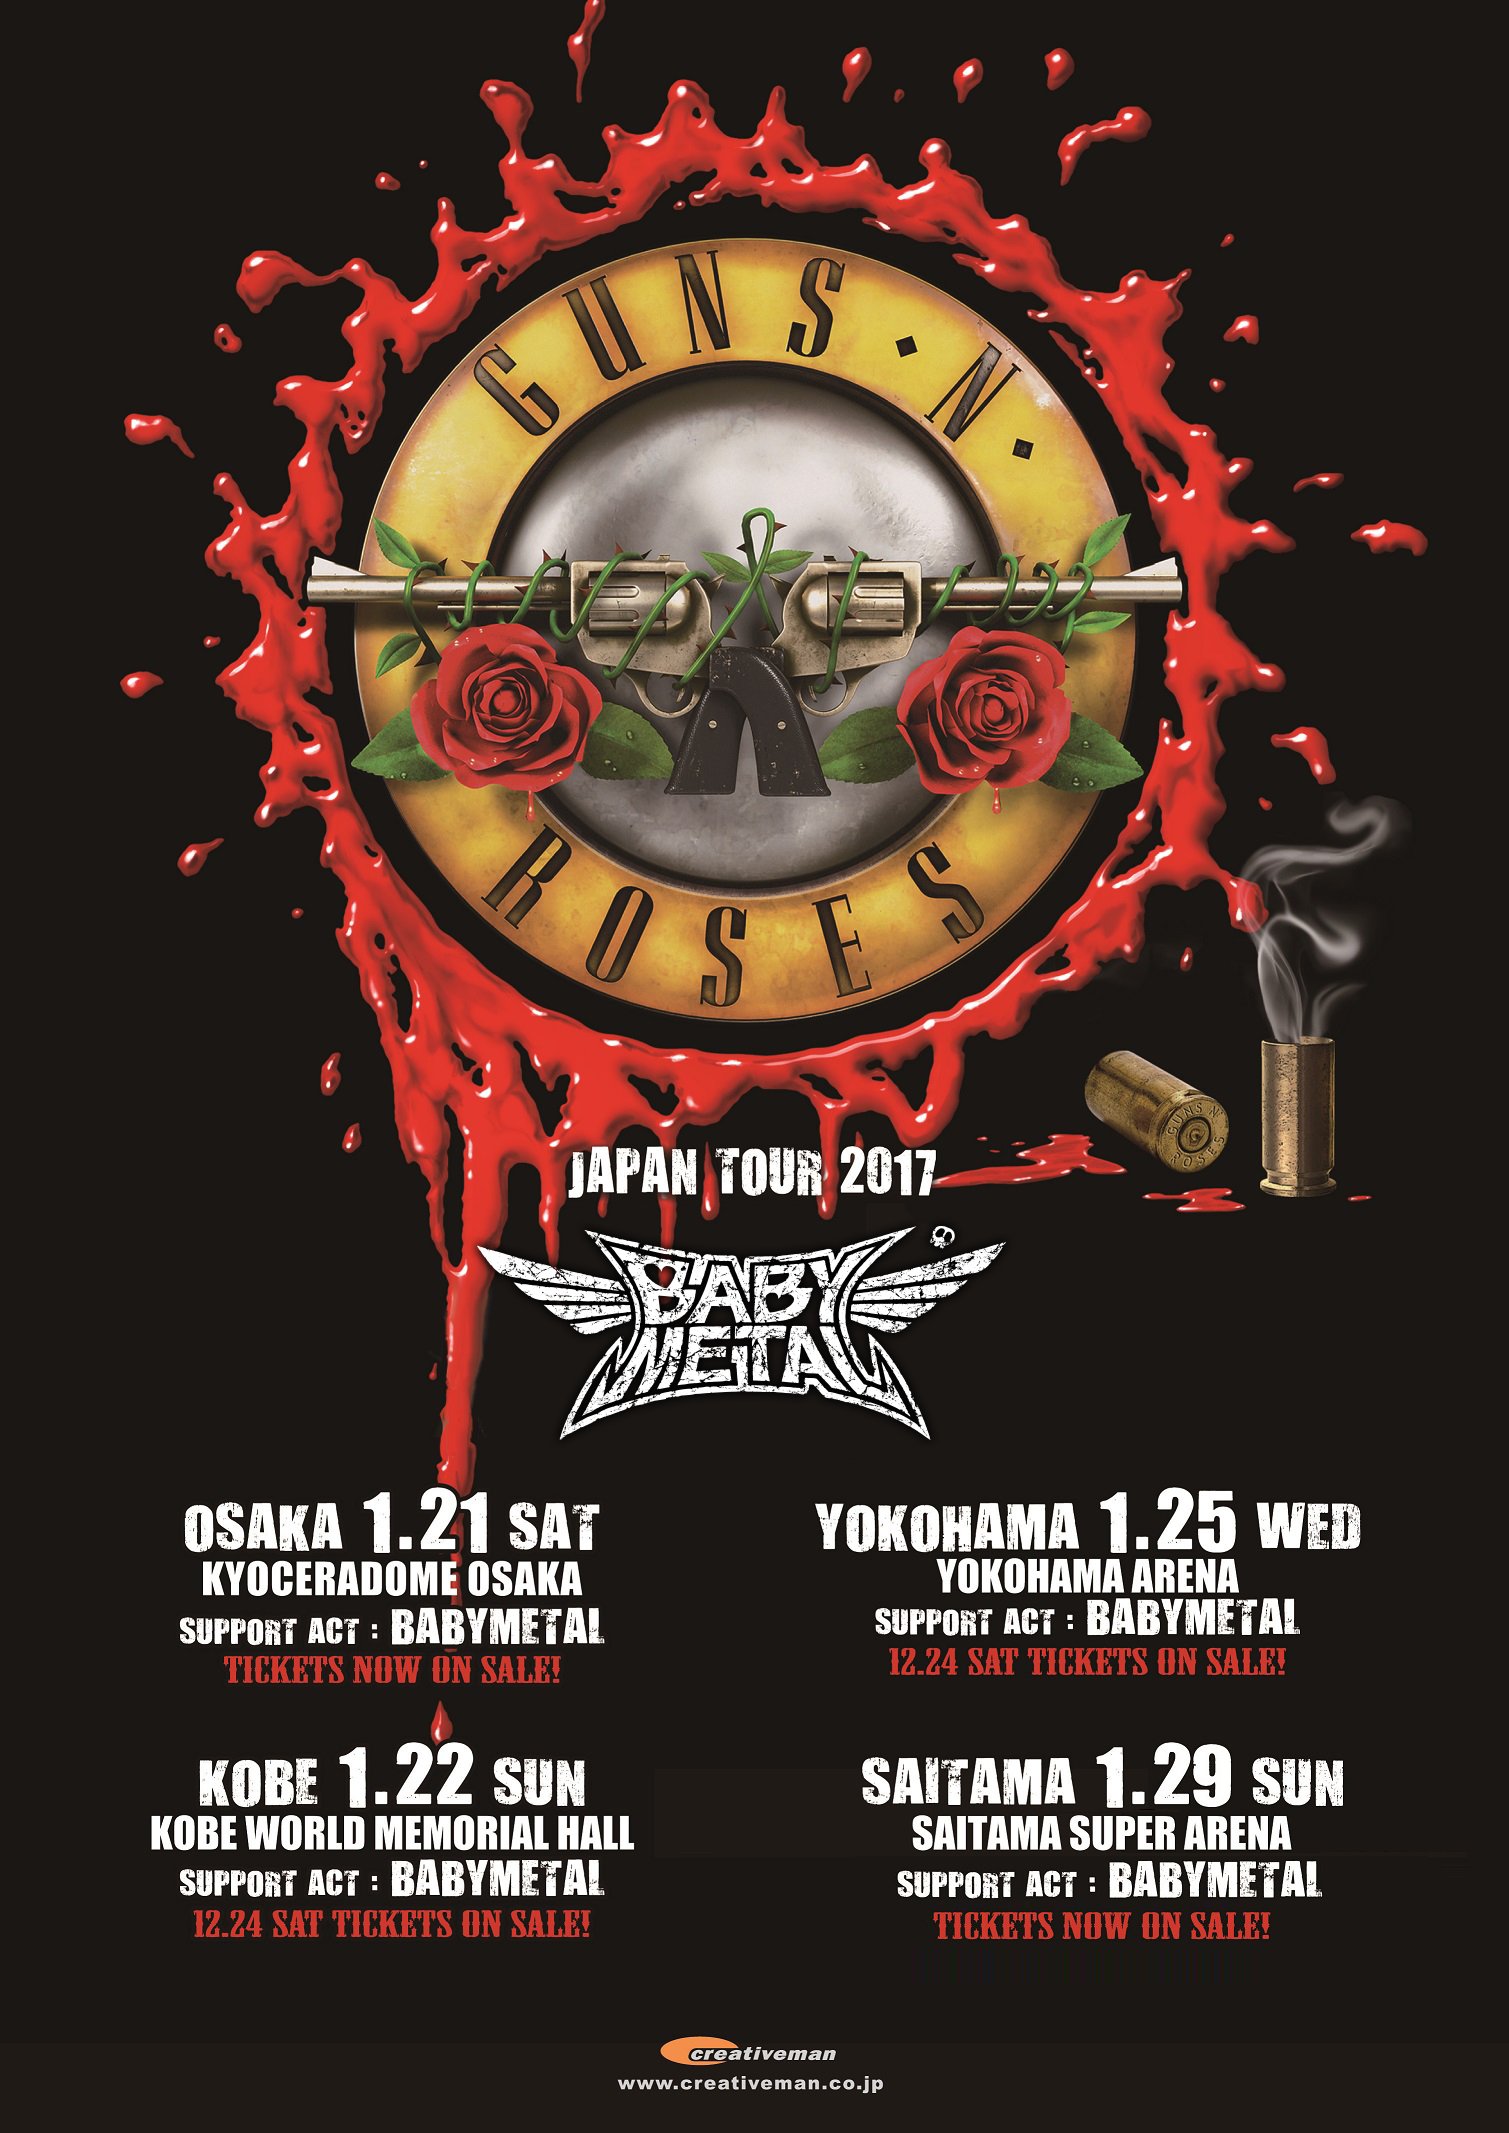 Babymetal Babymetal Confirmed To Support Guns N Roses Gunsnroses Tour In Japan Gnfnr T Co Kbkvxnevvt T Co Mg6qmui15o Twitter